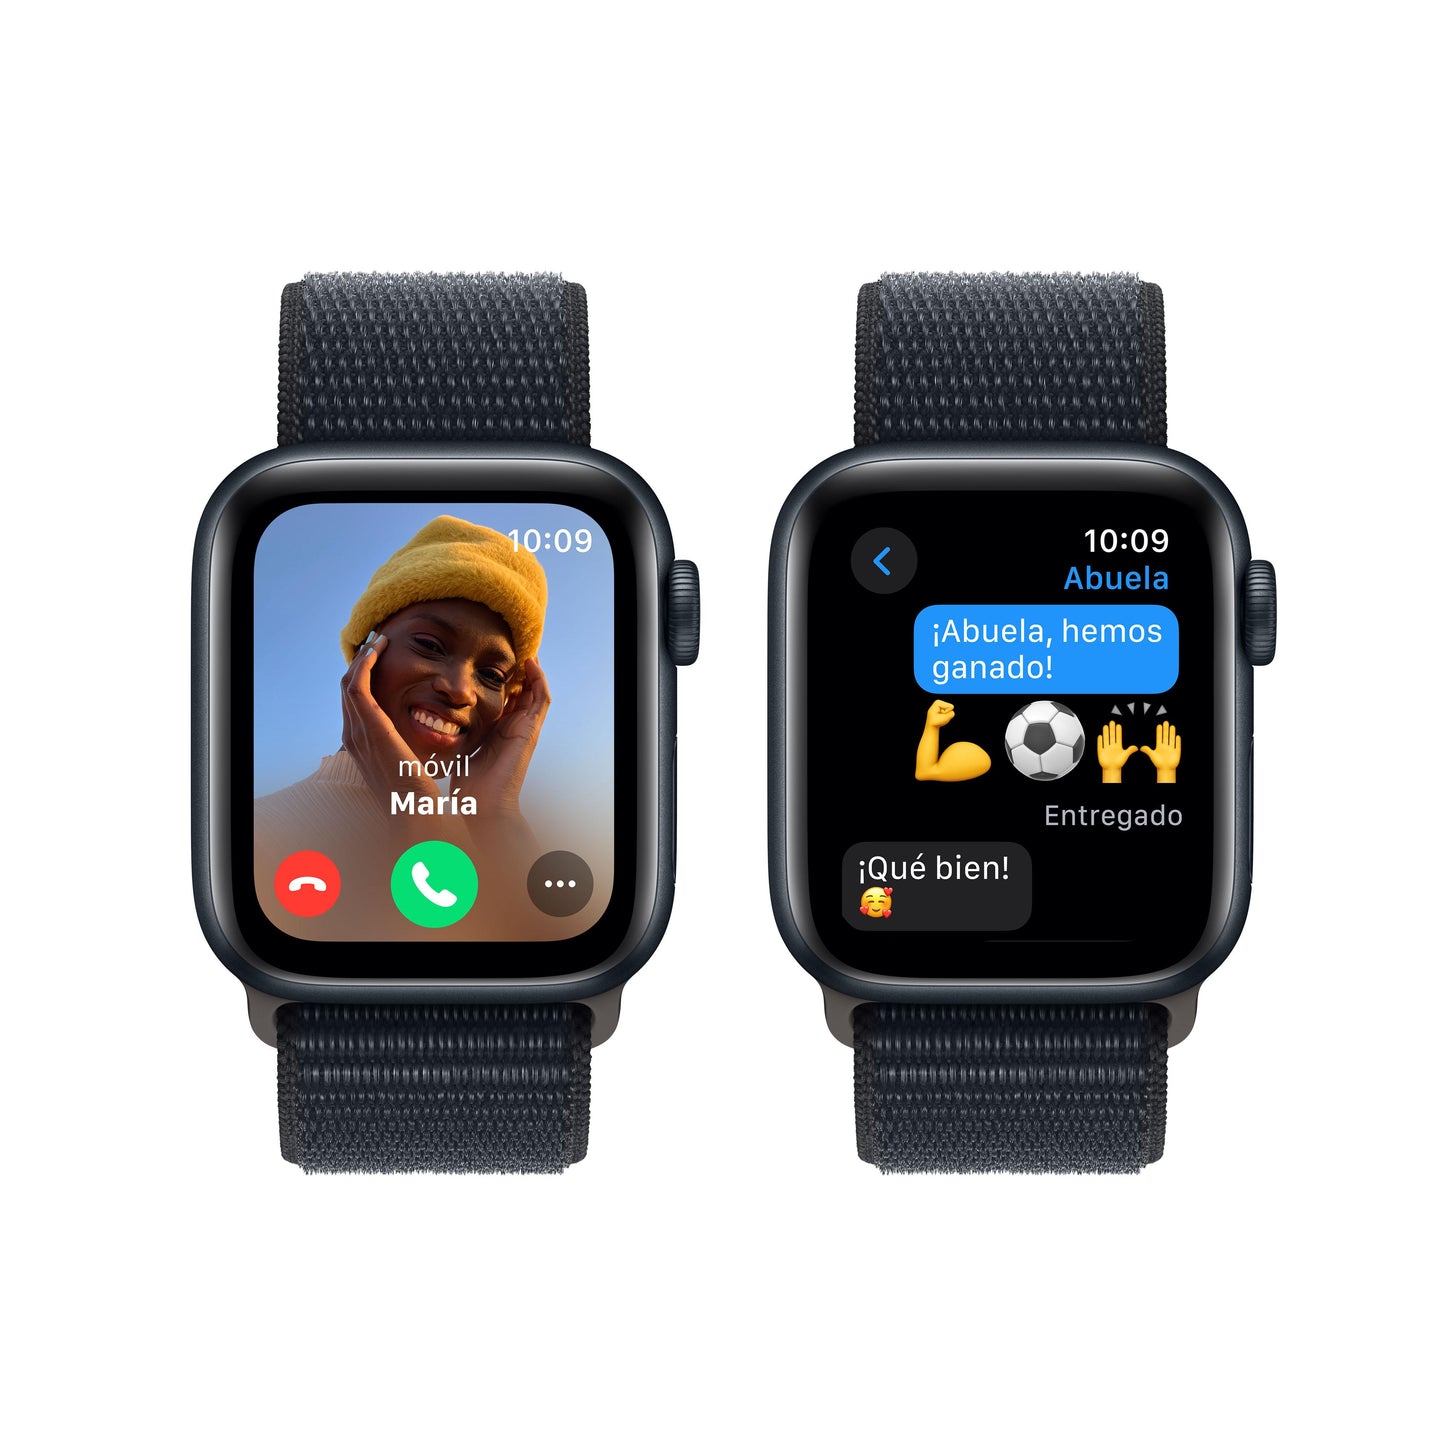 Apple Watch SE (GPS) - Caja de aluminio en color medianoche de 40 mm - Correa Loop deportiva color medianoche